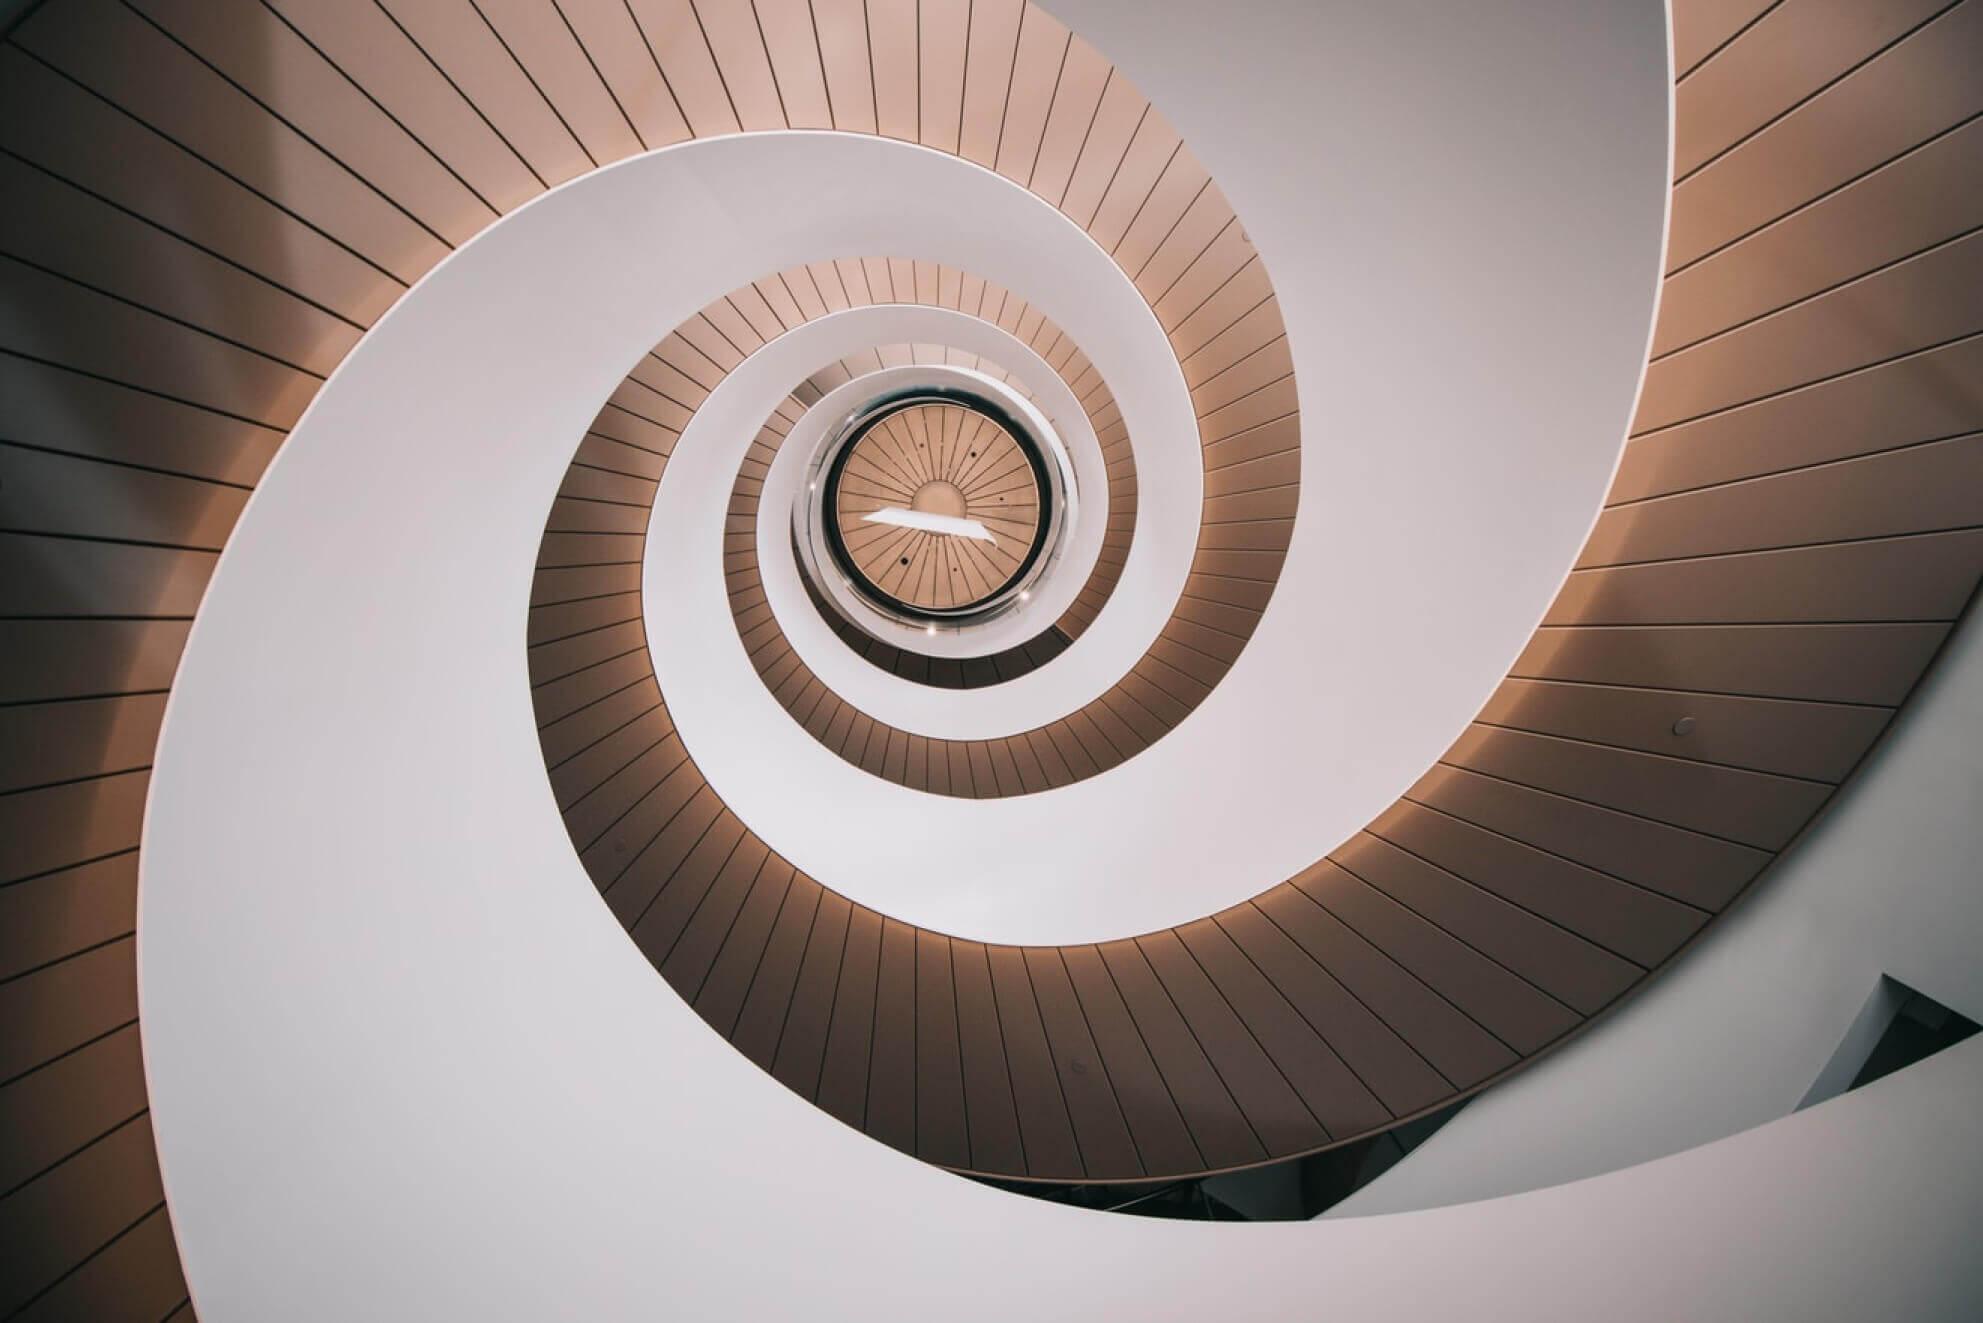 infinite loop of stairs